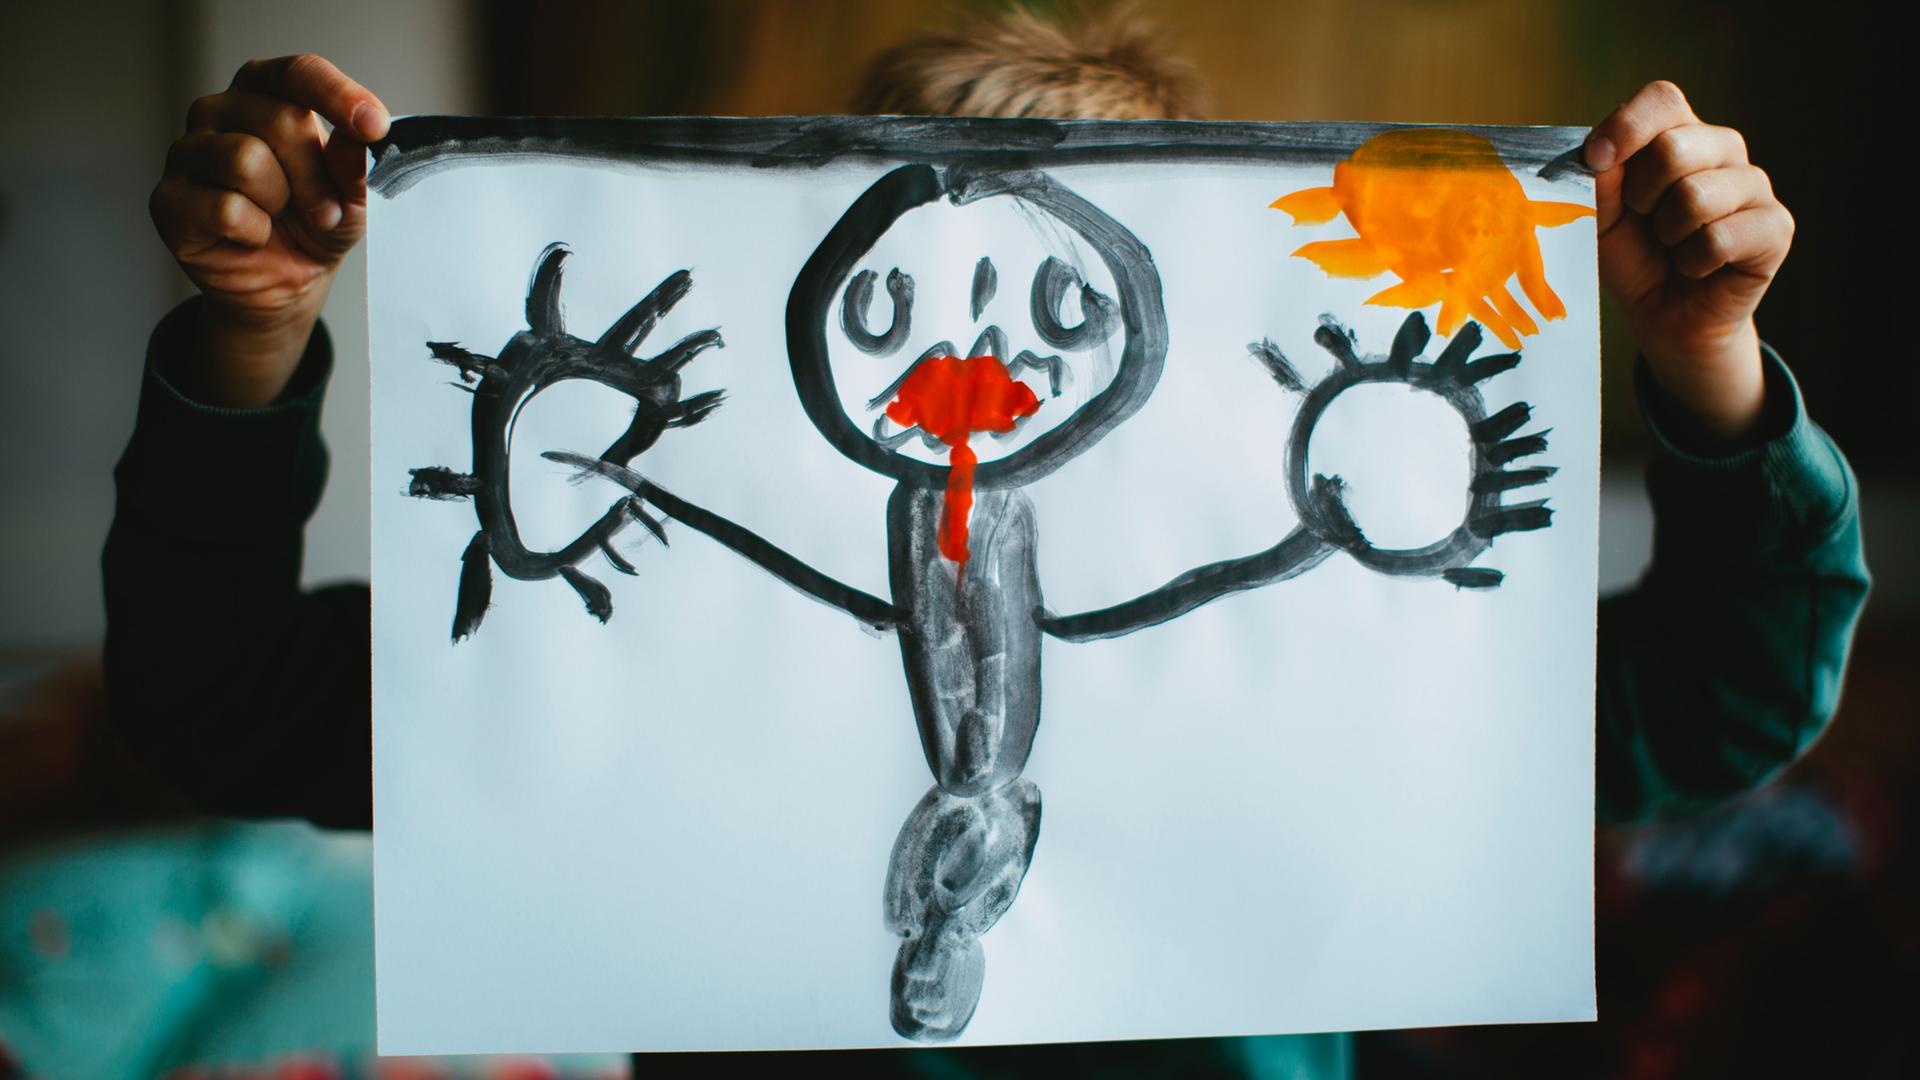 Ein Kind hält ein selbstgemaltes Bild vor seinen Kopf. Dem Mensch auf dem Bild läuft rote Farbe aus dem Mund.